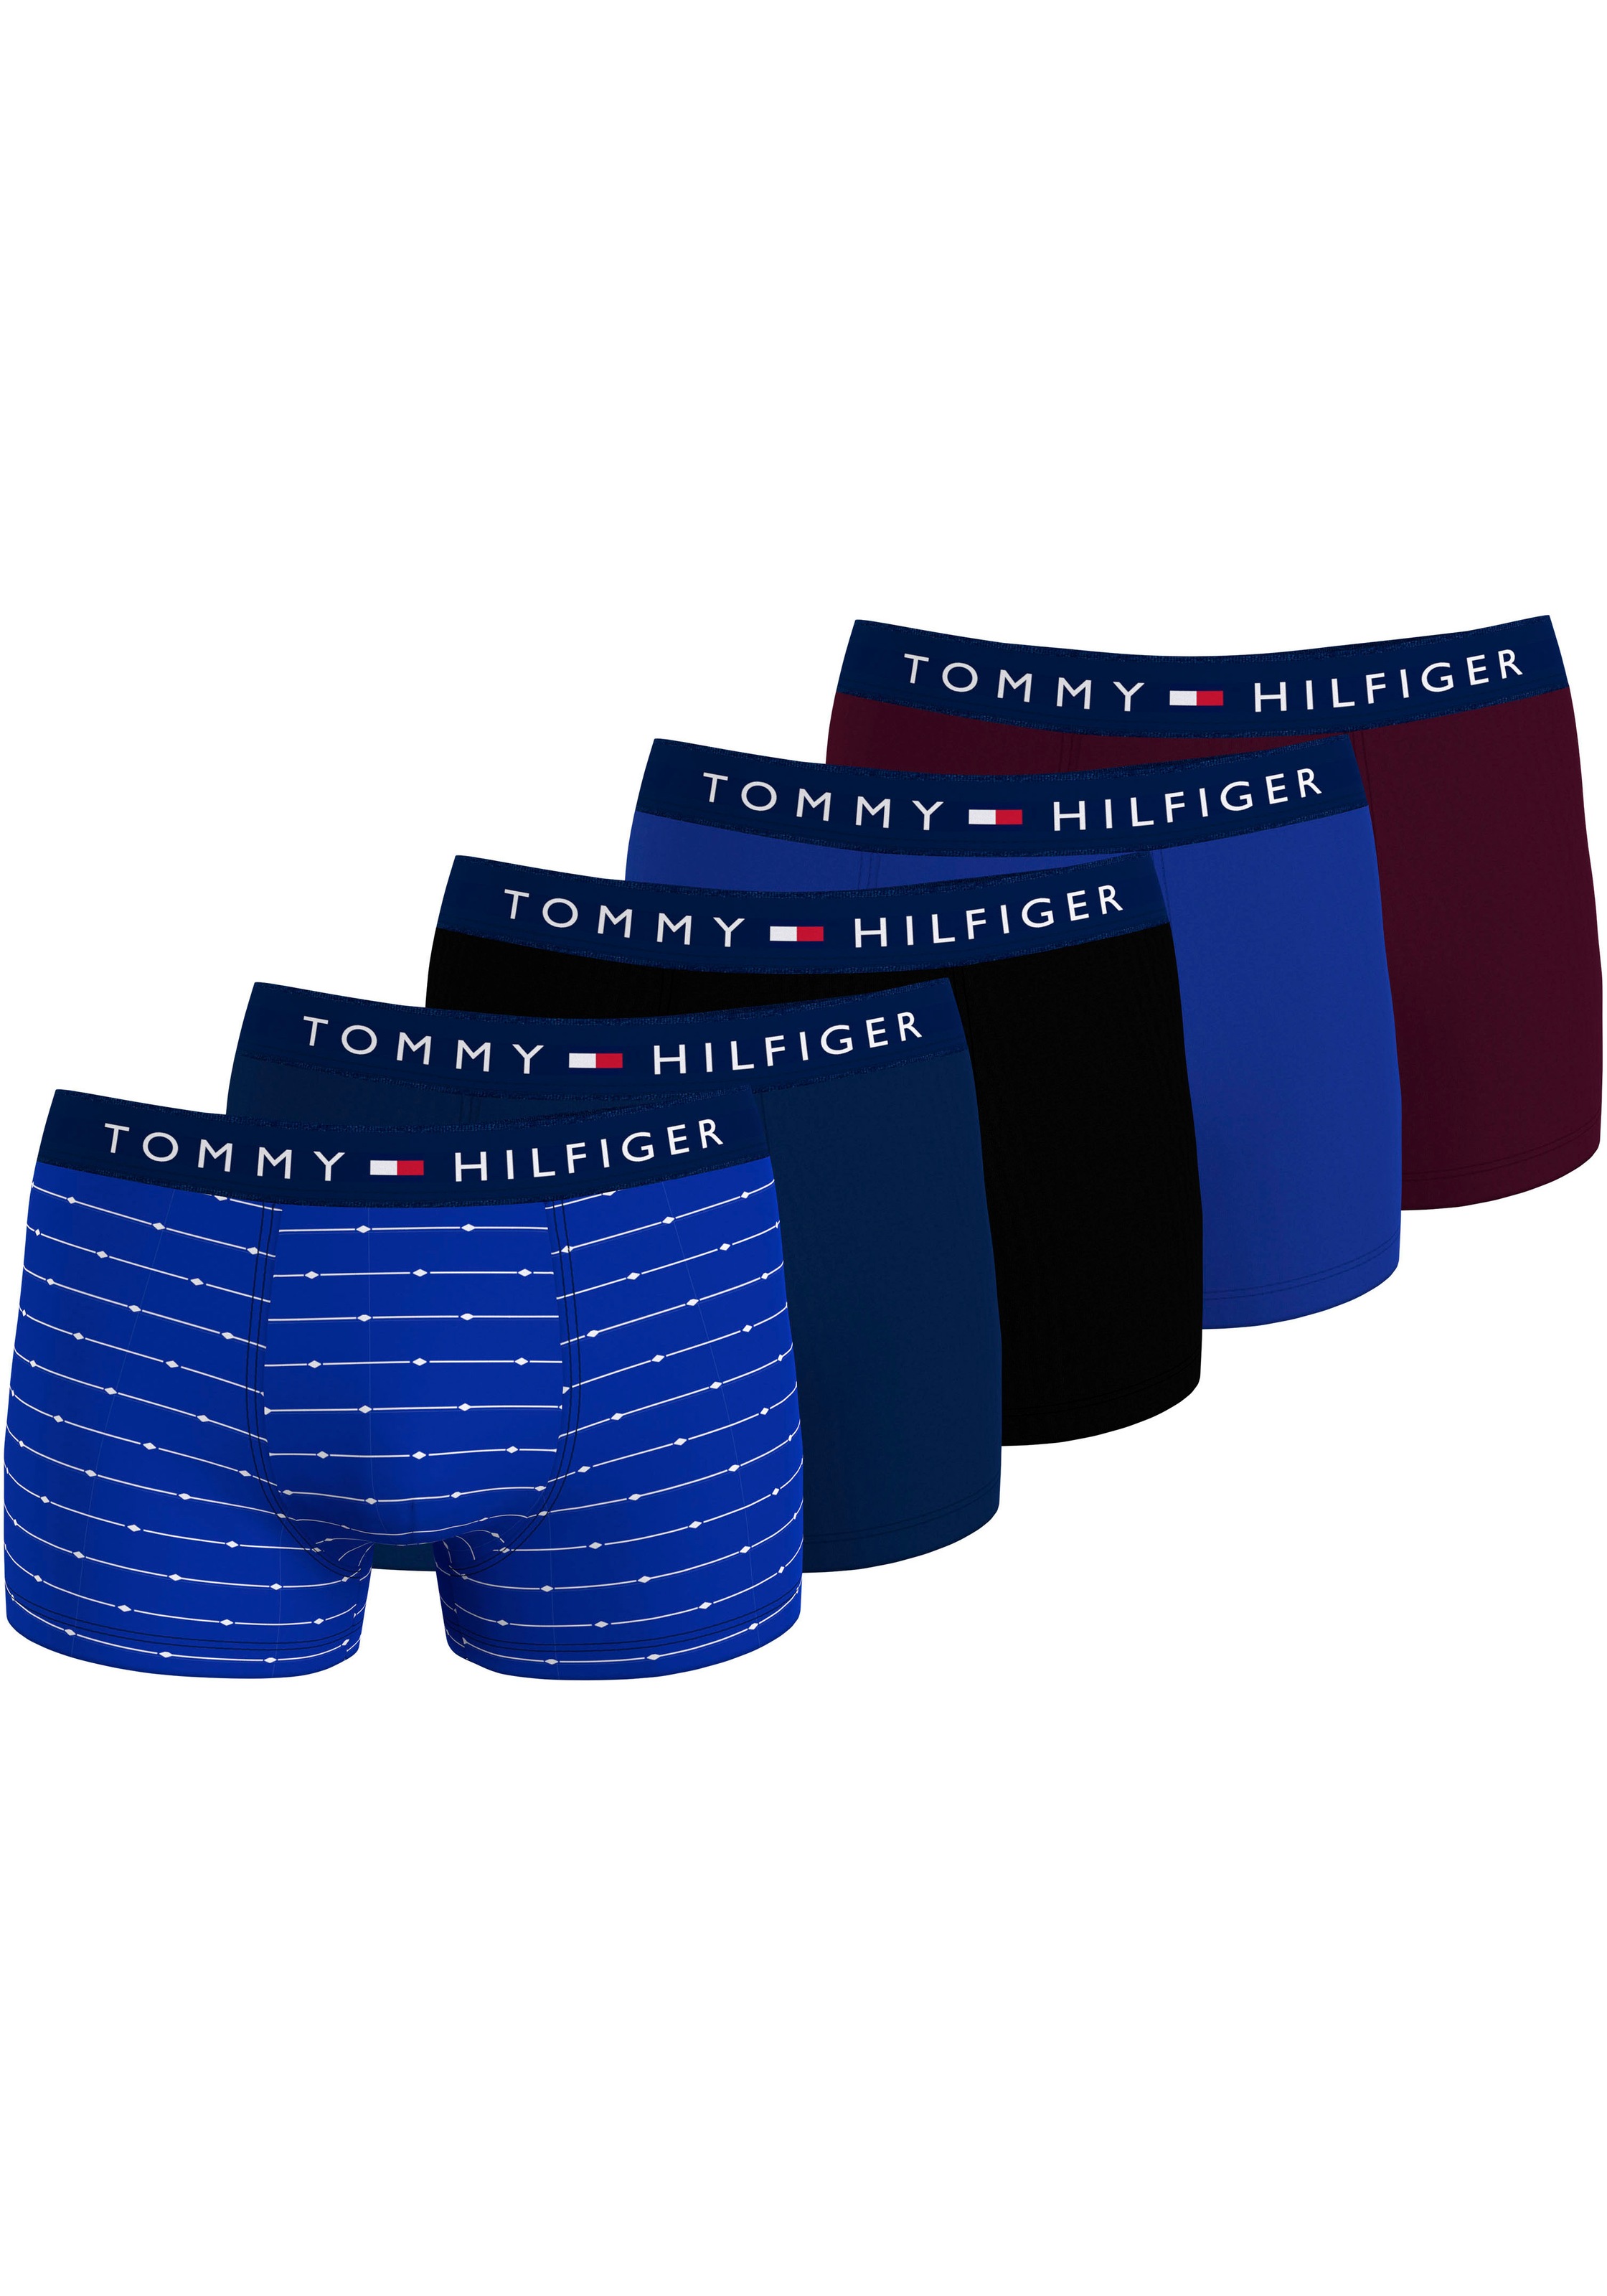 TOMMY HILFIGER Underwear TRUNK »5P TRUNK PRINT« (Packung 5 St. ...